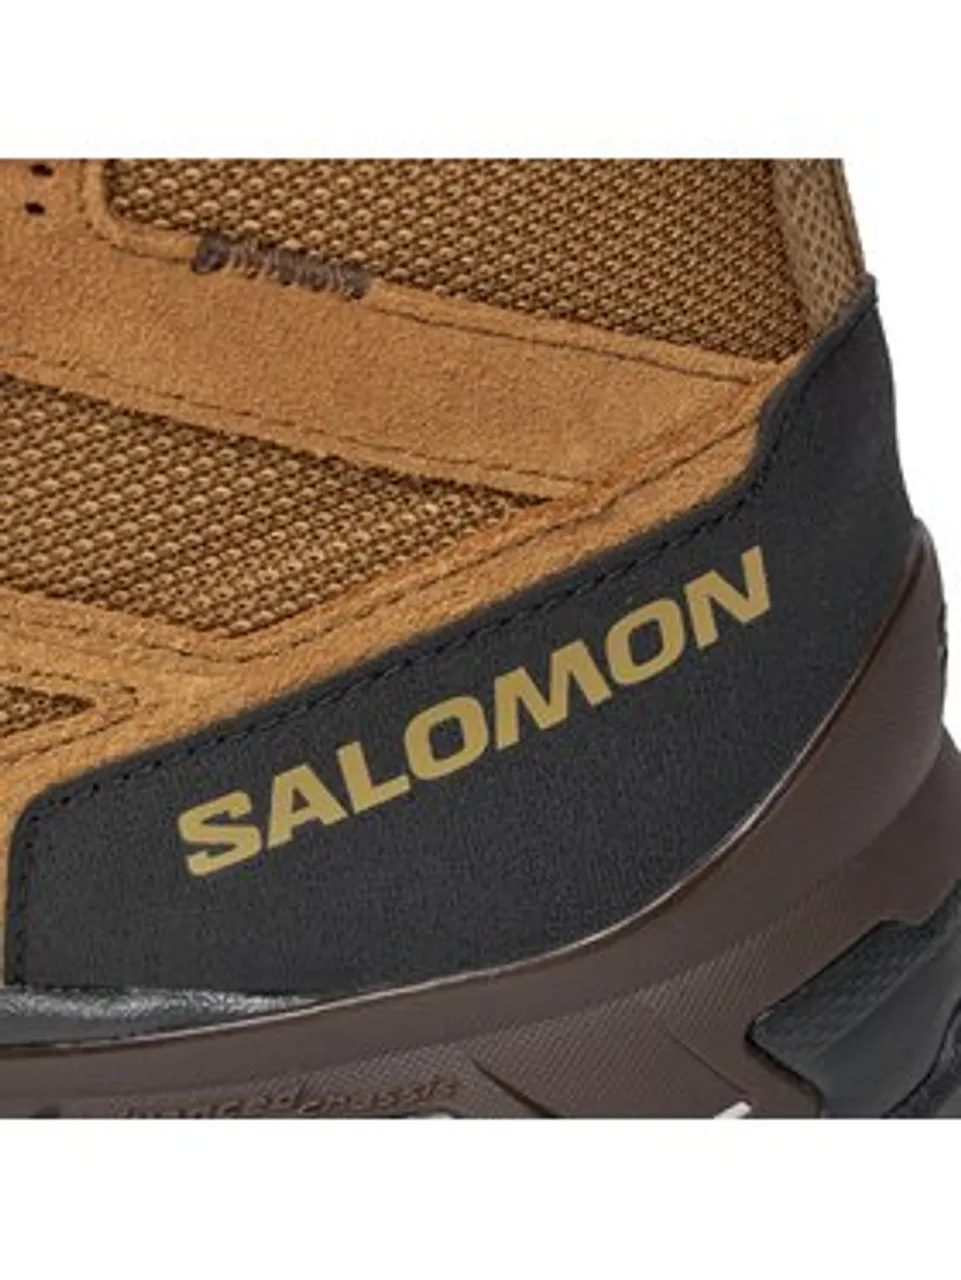 Salomon Trekkingschuhe X Ward Leather Mid GORE-TEX L47181800 Braun